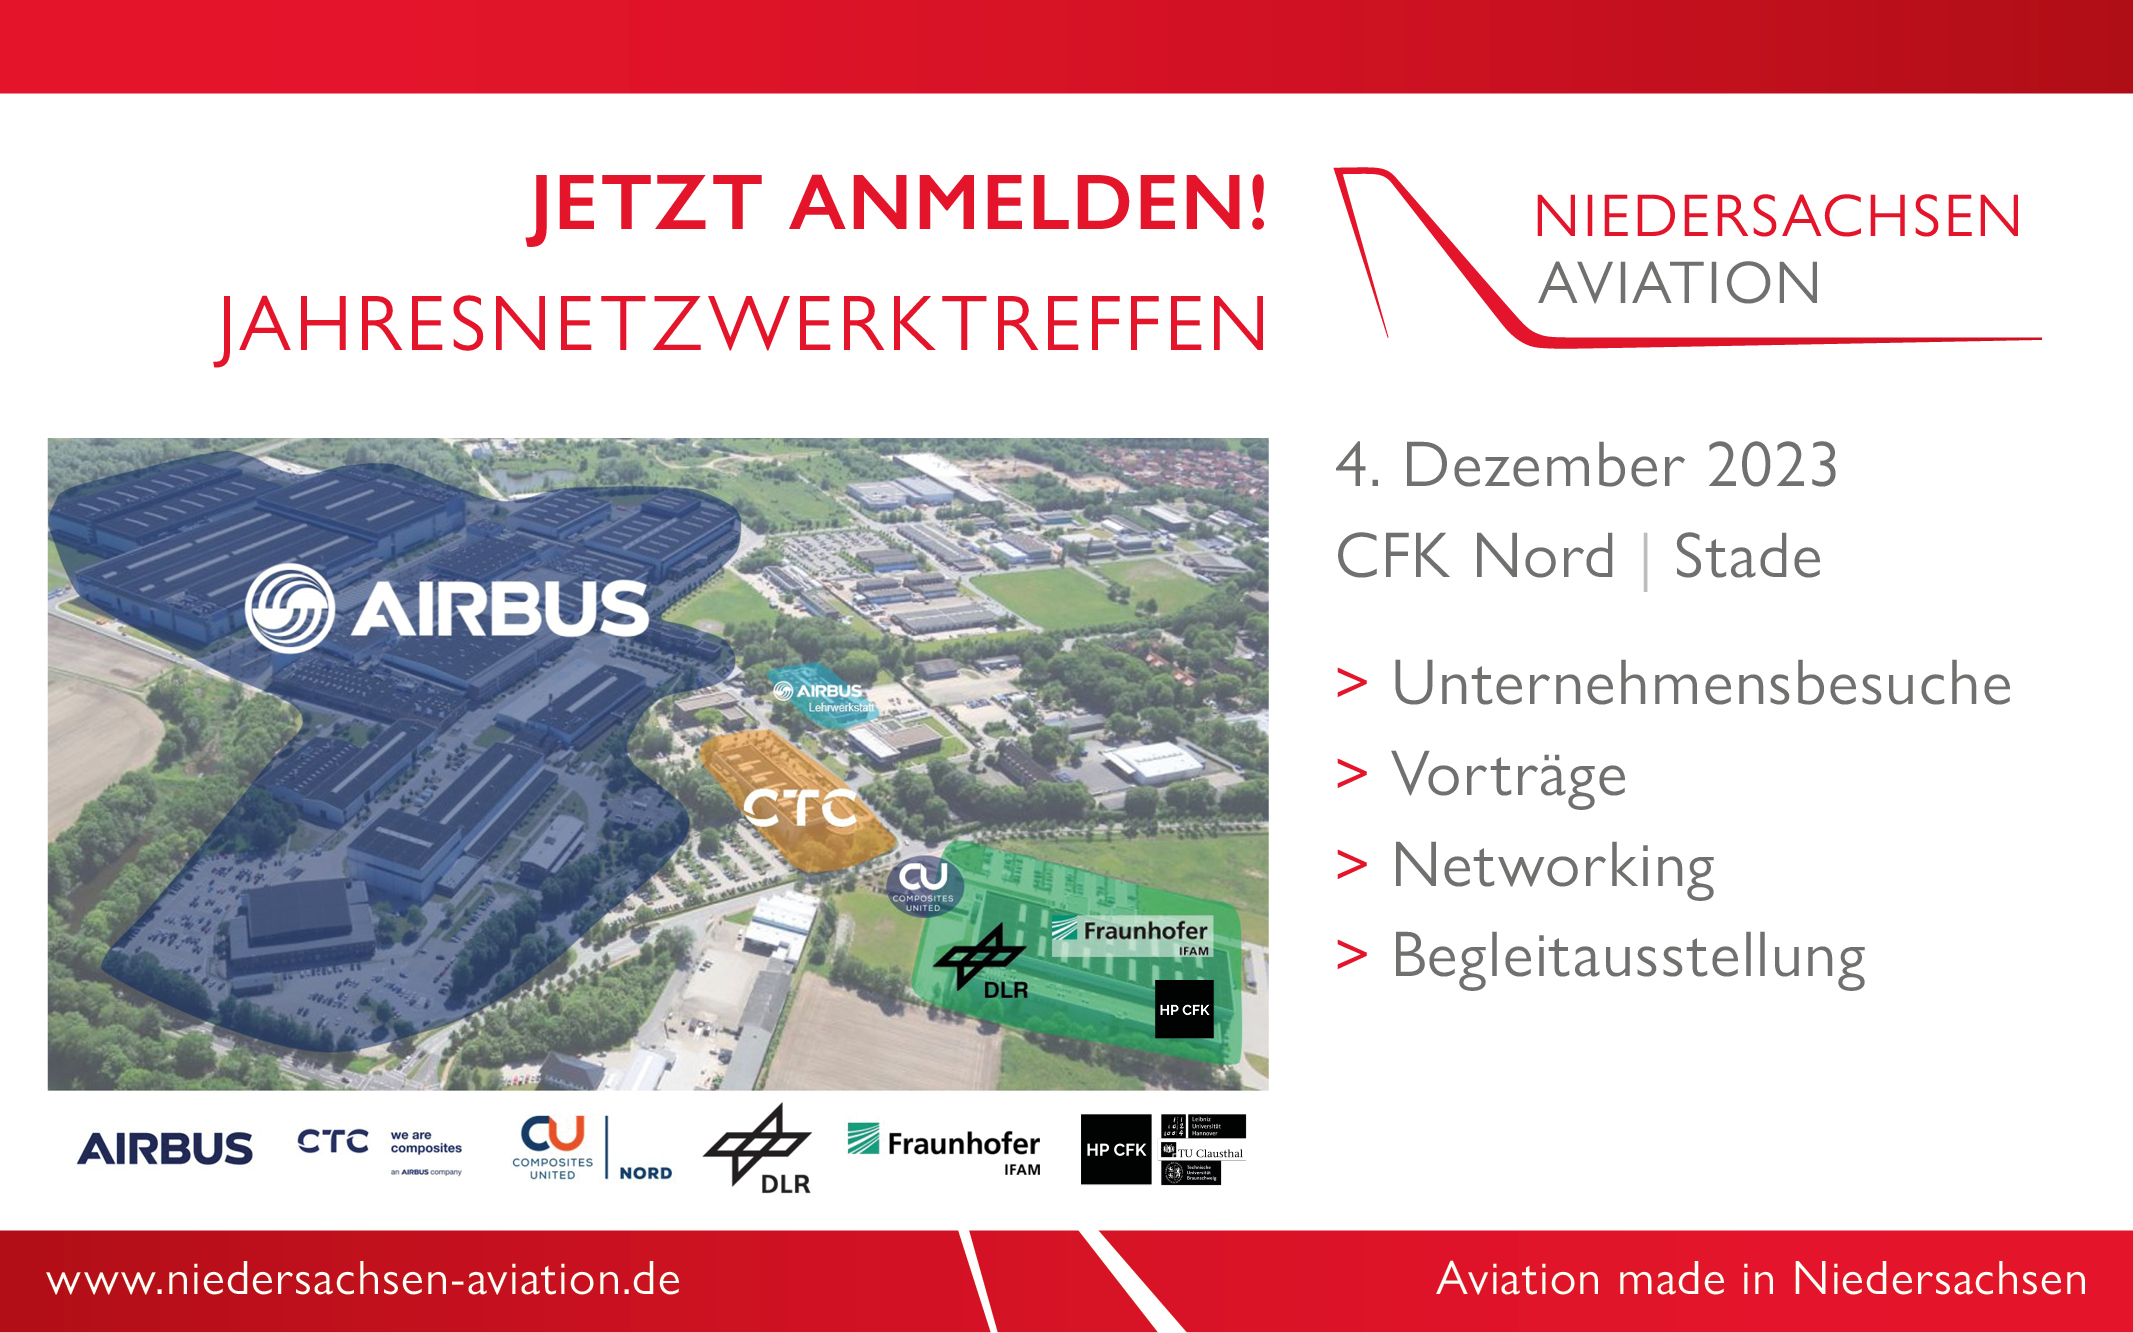 Jetzt anmelden zum Jahresnetzwerktreffen der Landesinitiative Niedersachsen Aviation